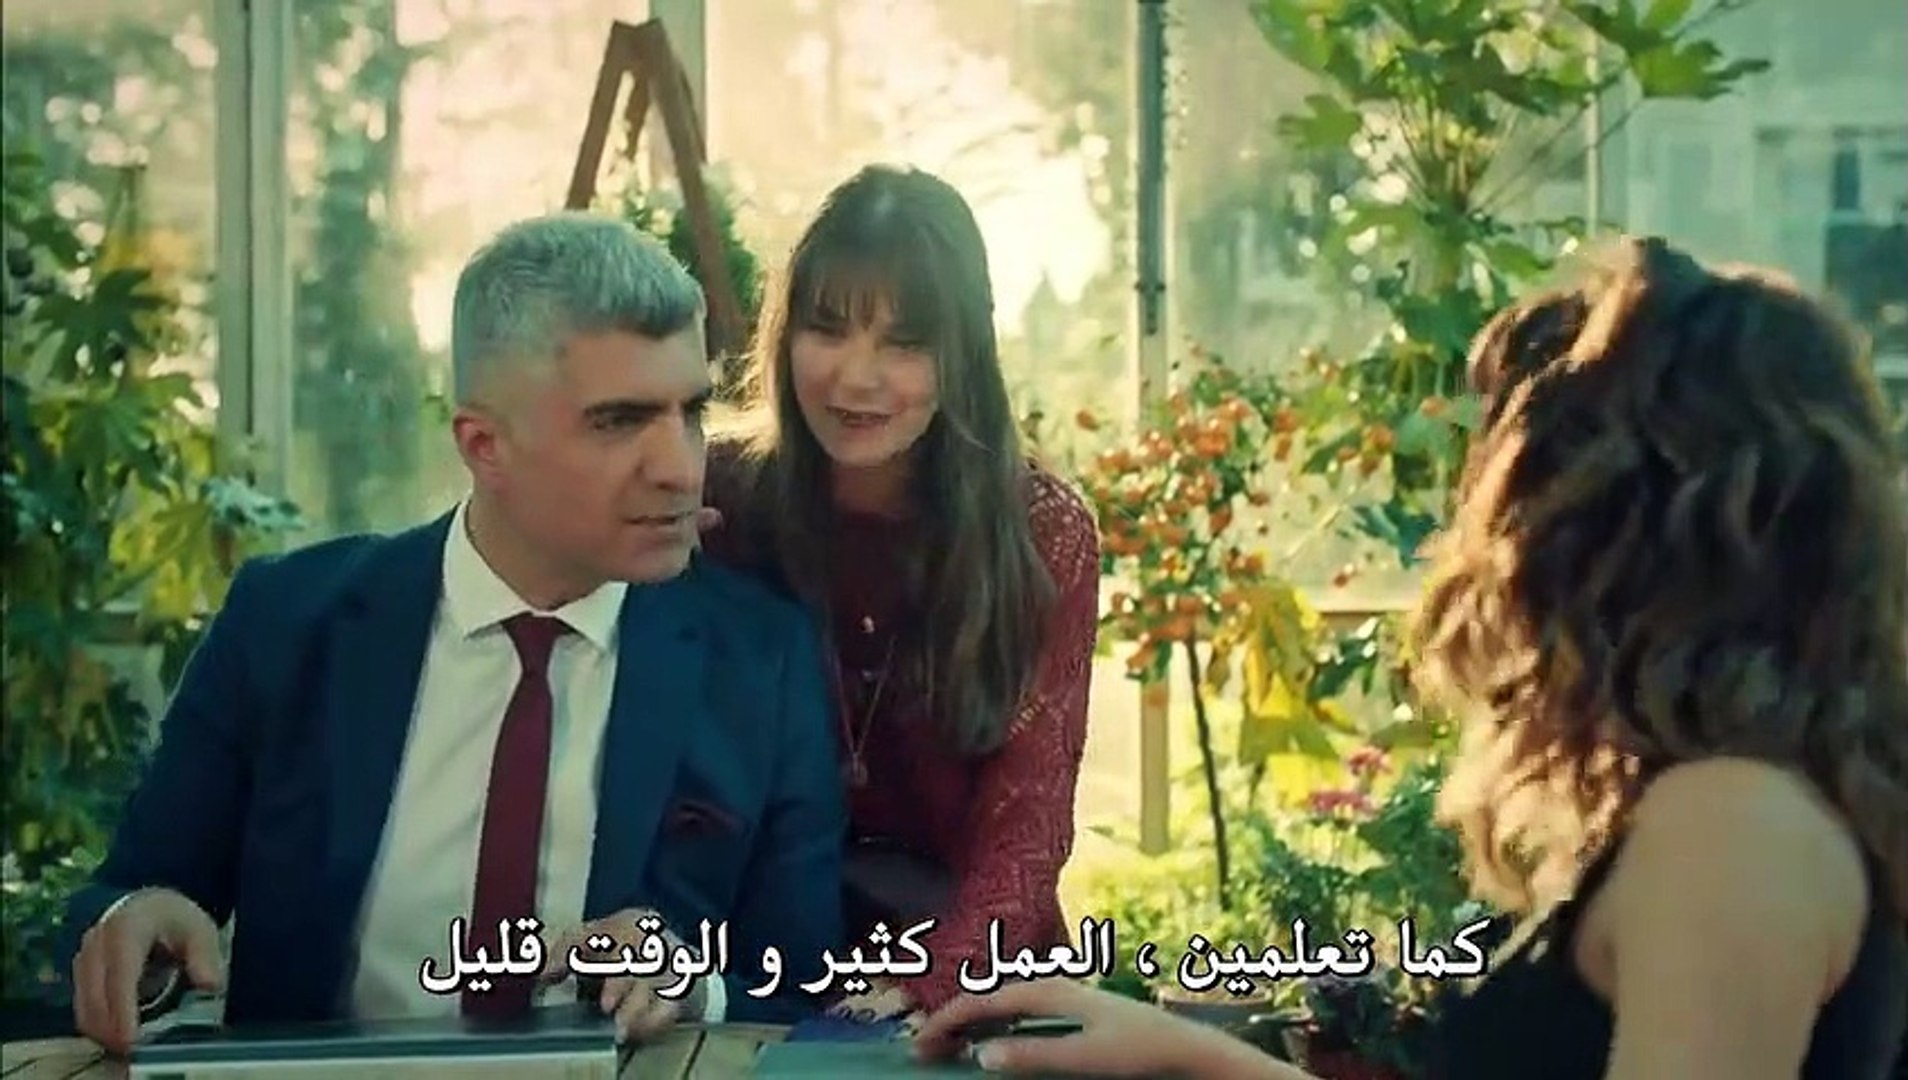 مسلسل عروس اسطنبول الموسم الثاني الحلقة 48 كاملة القسم 2 مترجمة للعربية -  Video Dailymotion - فيديو Dailymotion